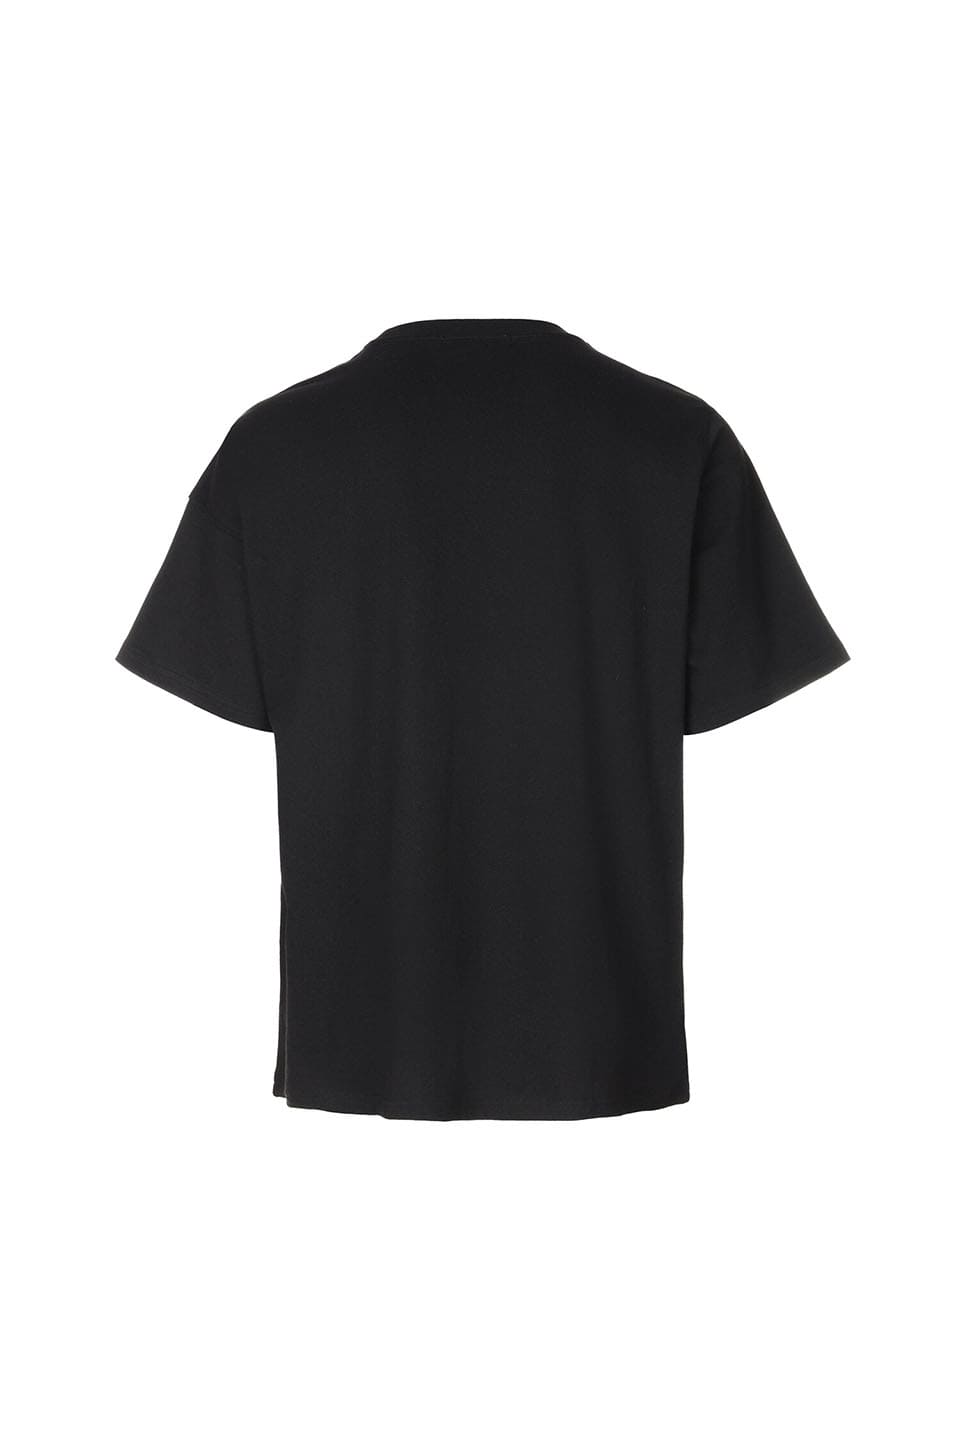 Unbalance Metal Clover Logo T-Shirts